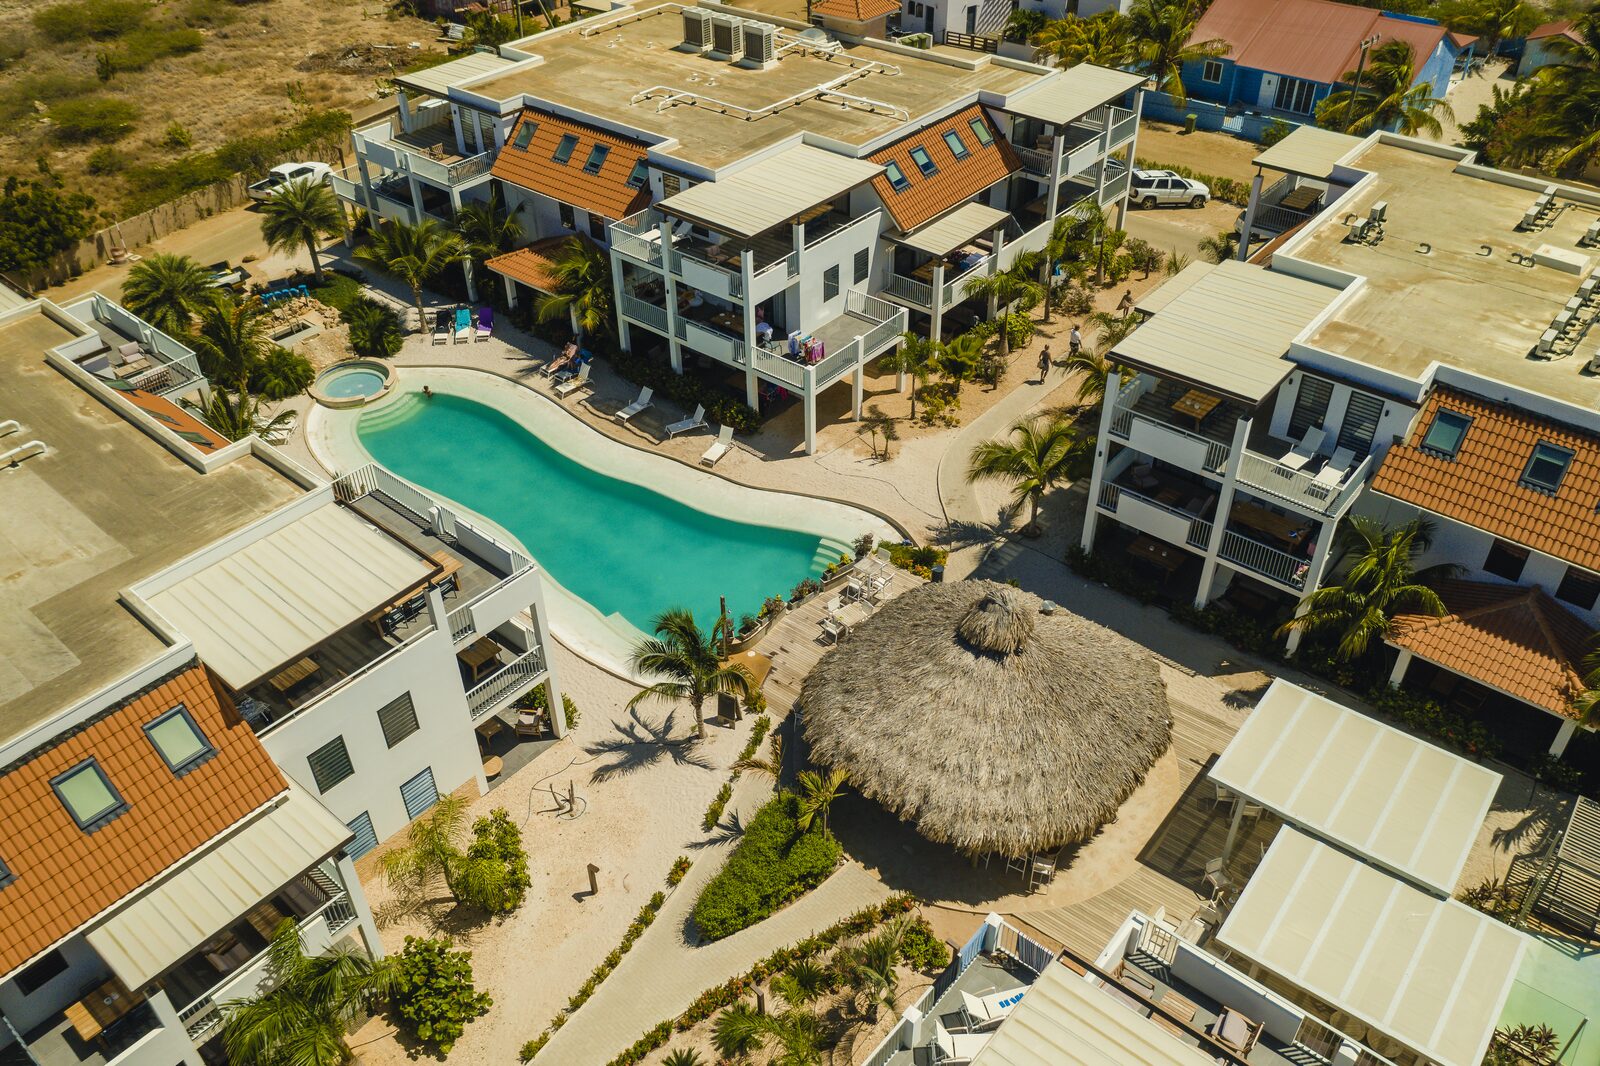 Uw verblijf op Resort Bonaire